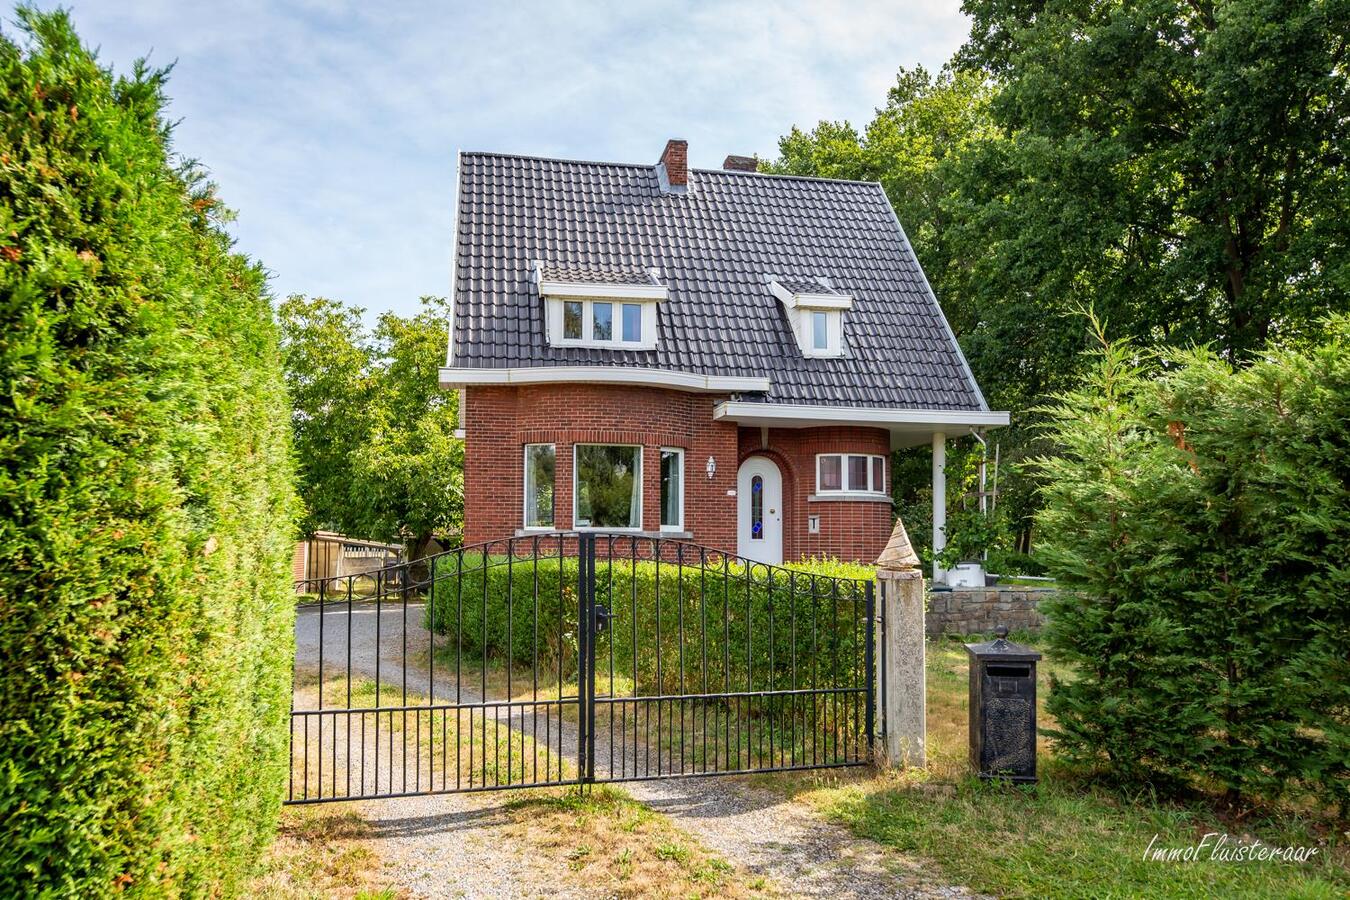 Property sold in Aarschot